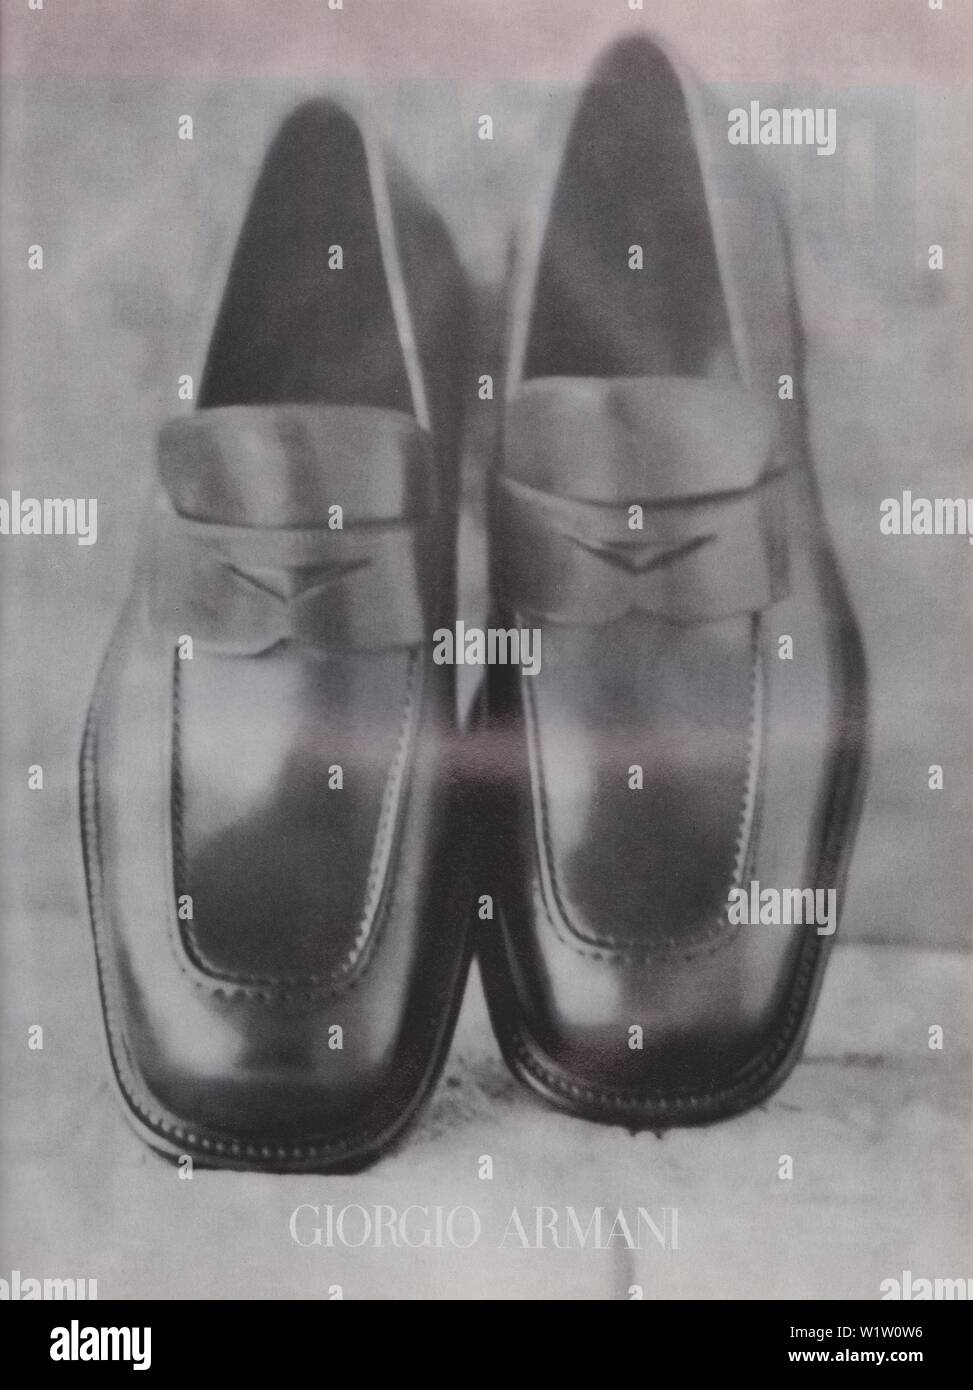 Poster pubblicitari Giorgio Armani Accessori di abbigliamento in magazzino dal 1998, nessun slogan, pubblicità, pubblicità creativa da anni novanta Foto Stock